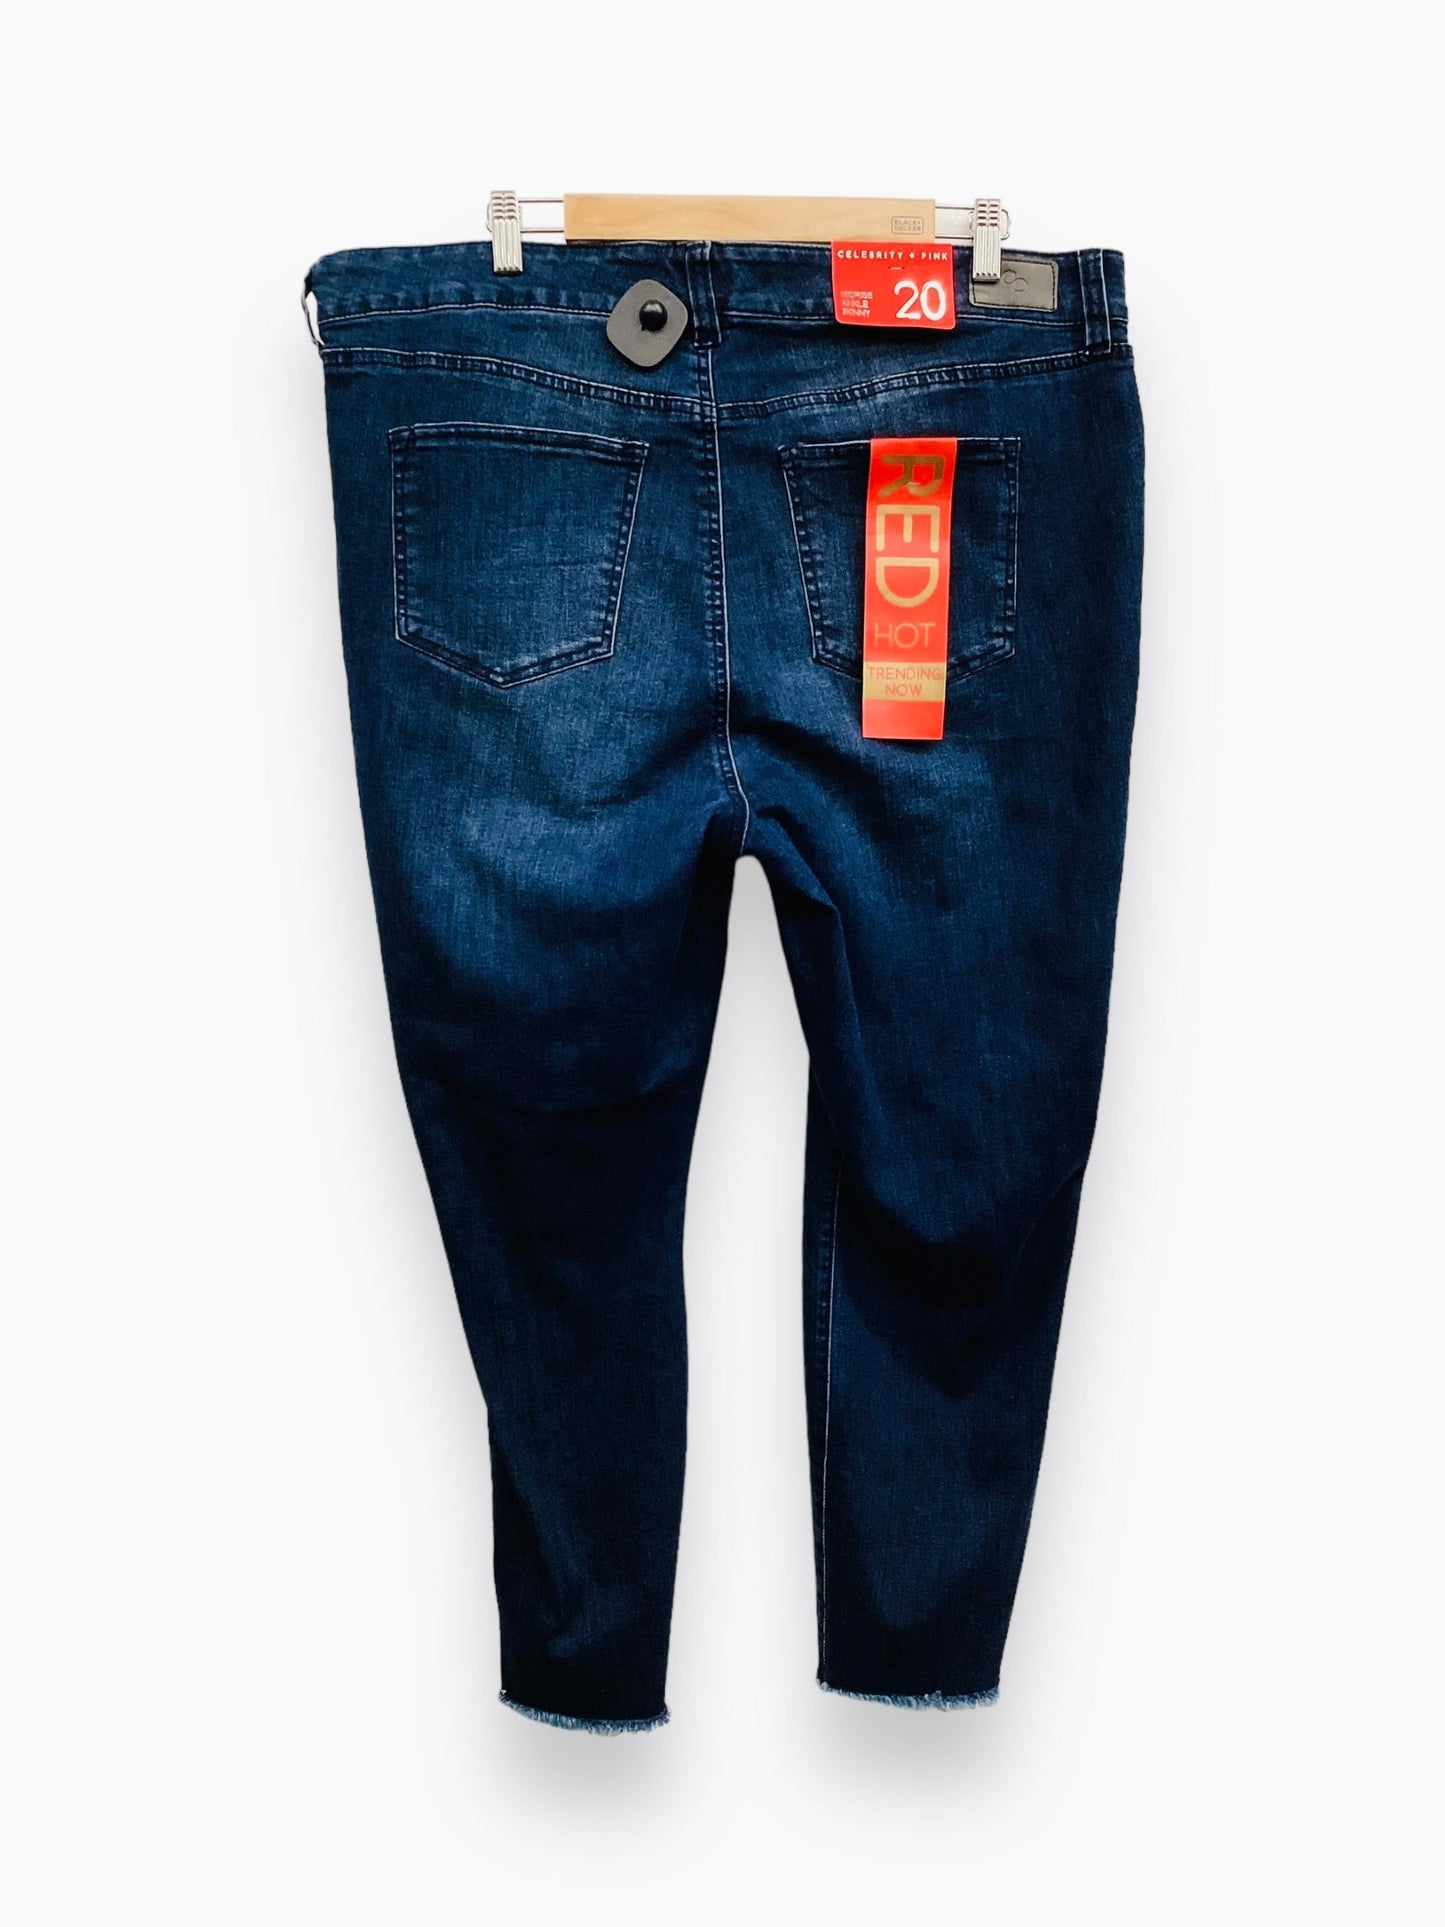 NWT Blue Denim Jeans Skinny Celebrity Pink, Size 20